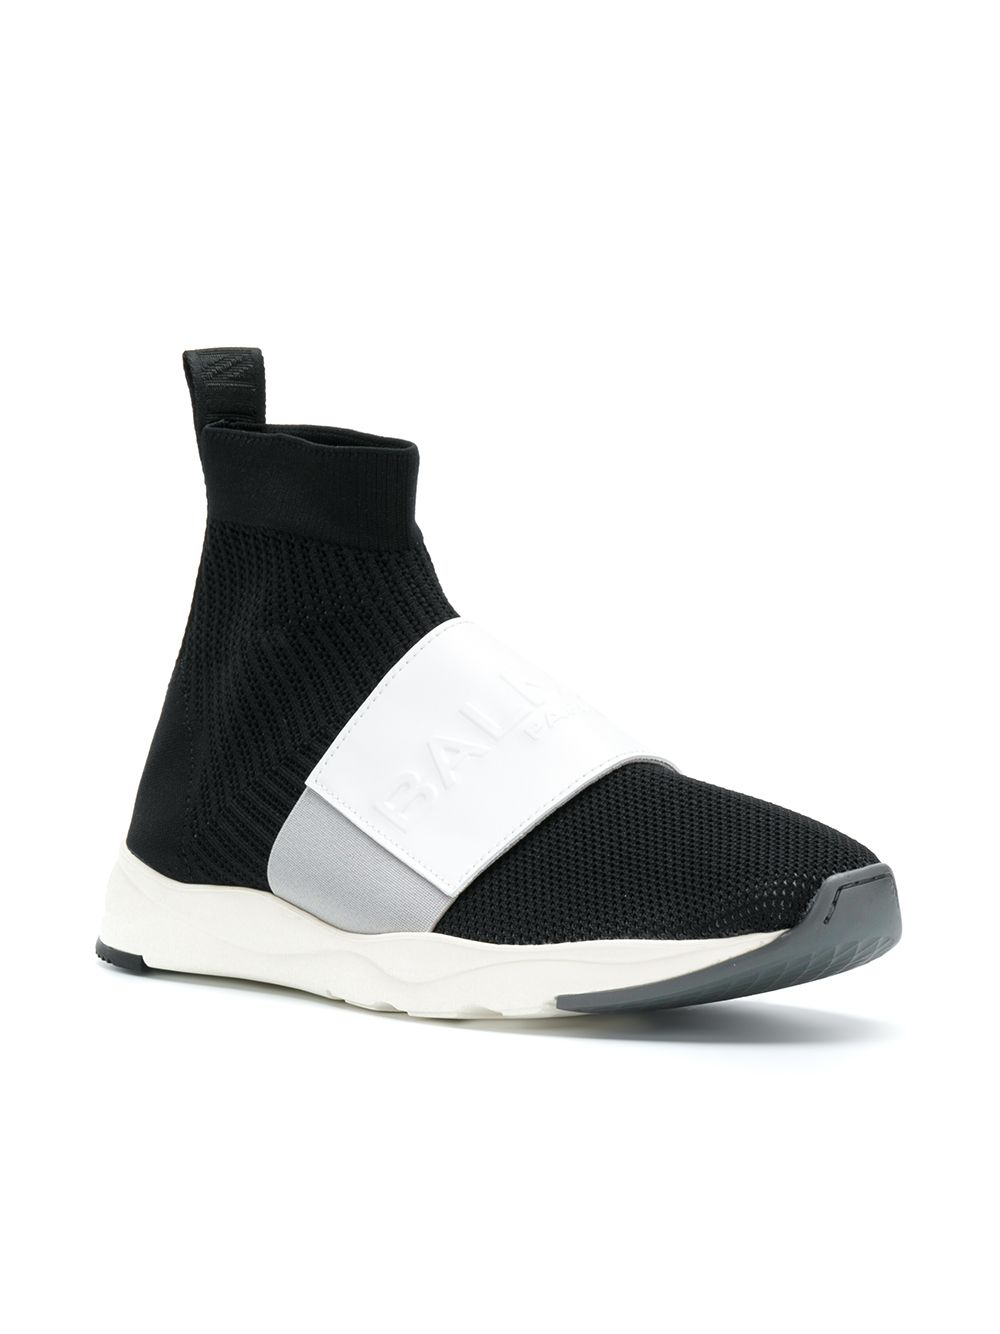 Balmain Sock Style Sneakers - Farfetch